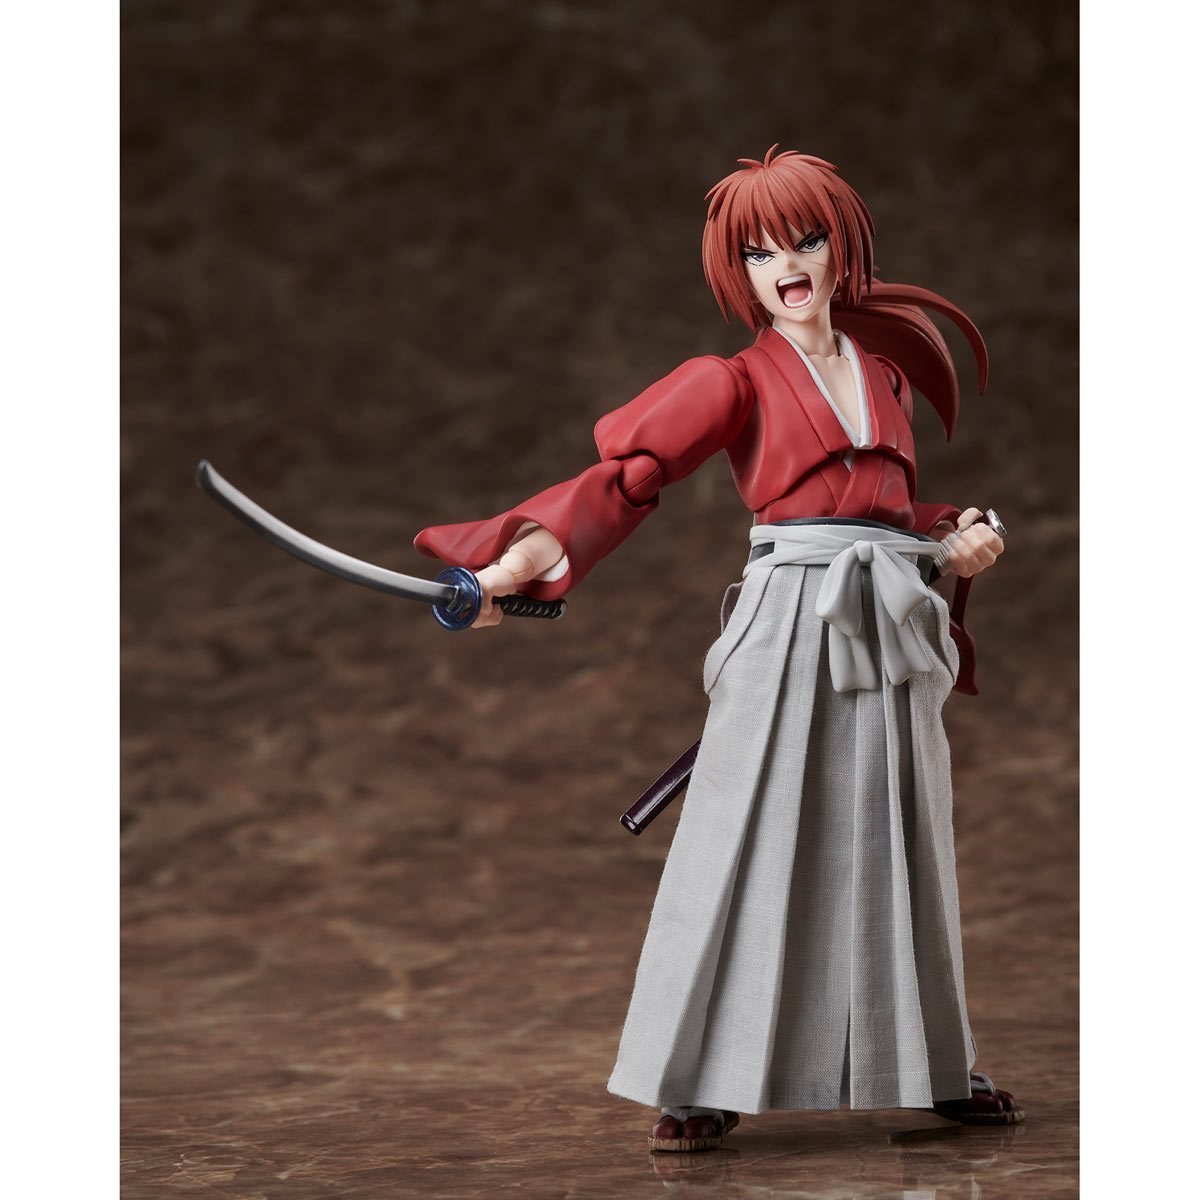 ANIPLEX Rurouni Kenshin Kenshin Himura BuZZmod. Action Figure